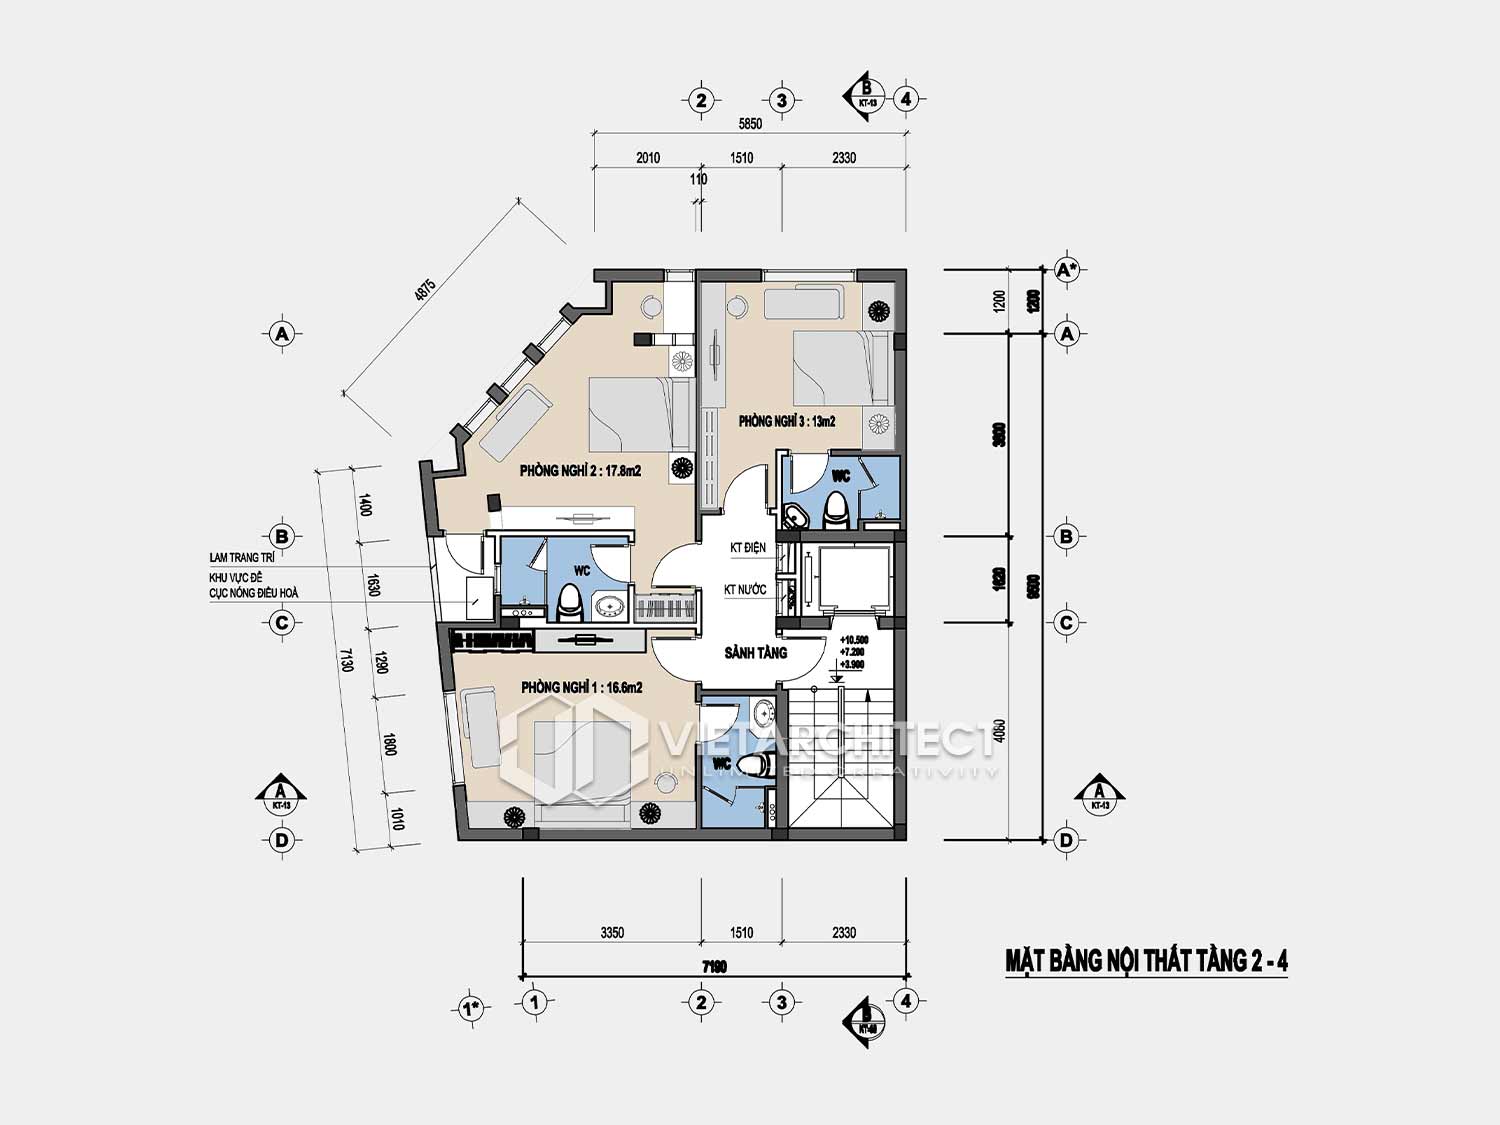 Thiết kế khách sạn bác Thụ mặt bằng tầng 2-4